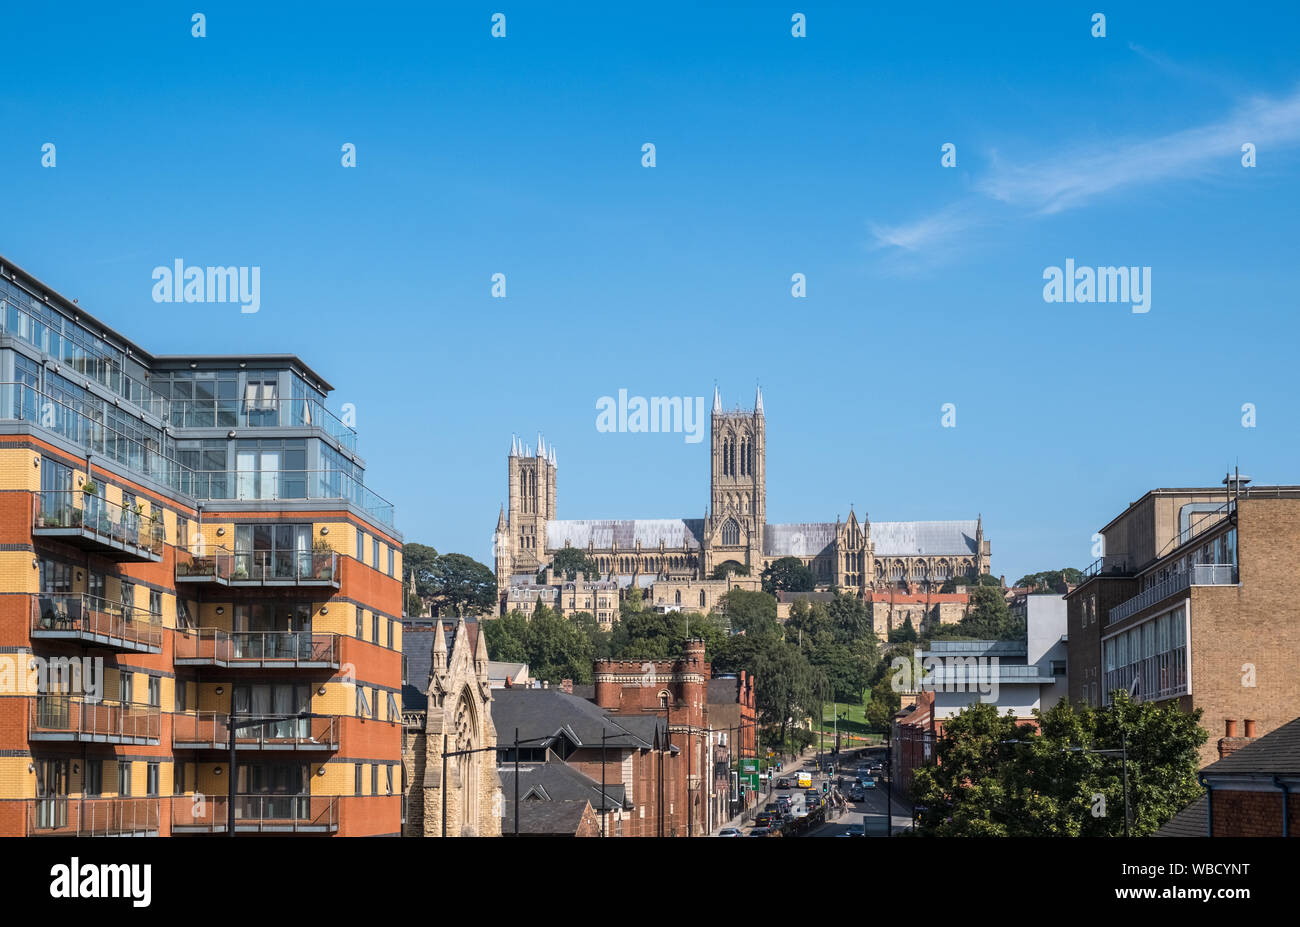 Erhöhte Stadtbild Blick auf historische Gotische Kathedrale von Lincoln, Lincoln, Lincolnshire, Großbritannien Stockfoto